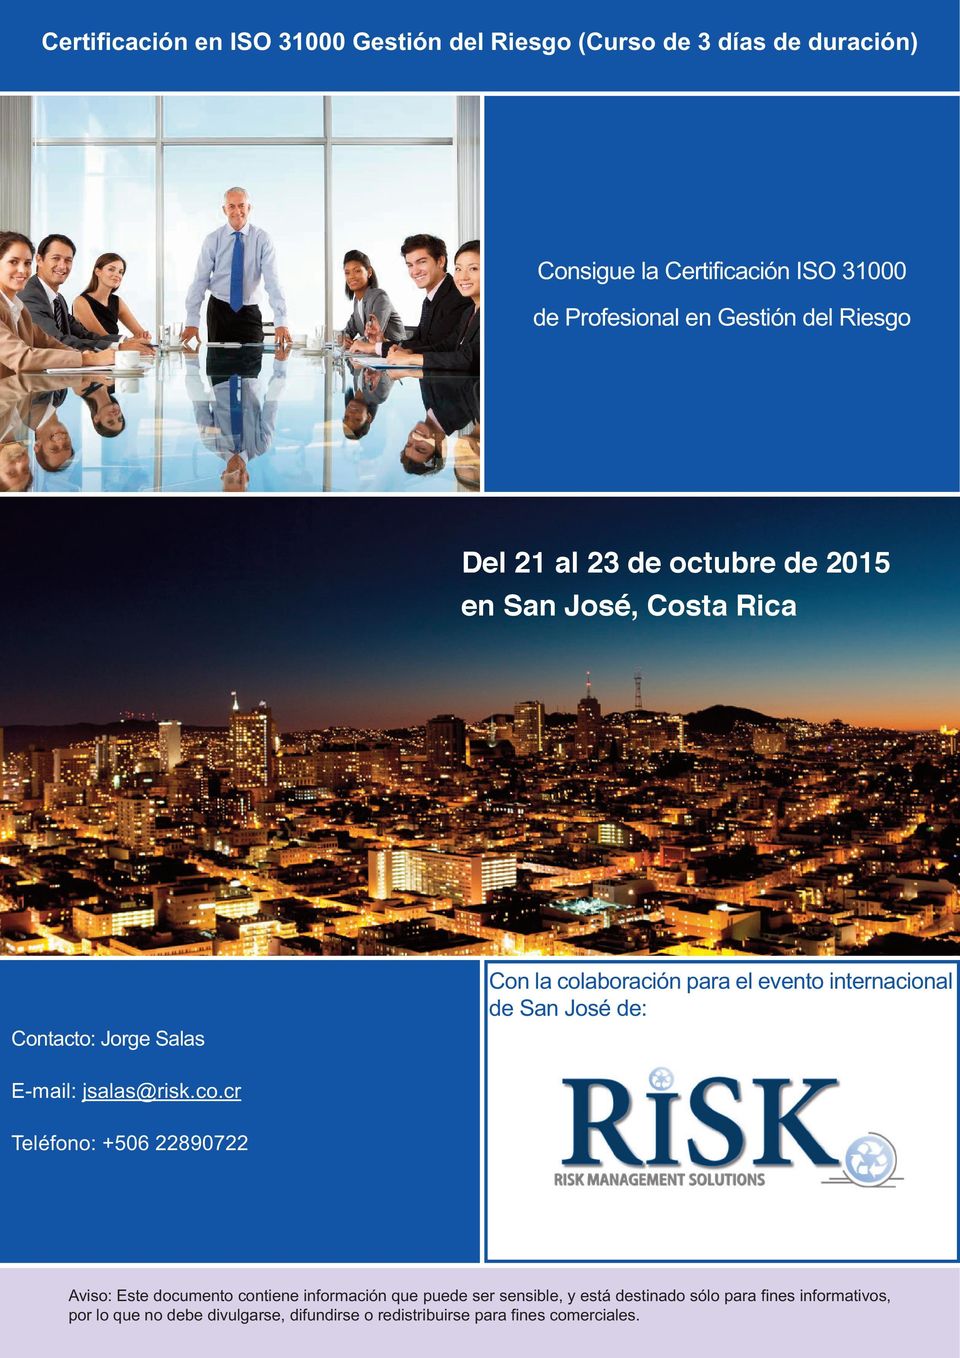 internacional de San José de: E-mail: jsalas@risk.co.